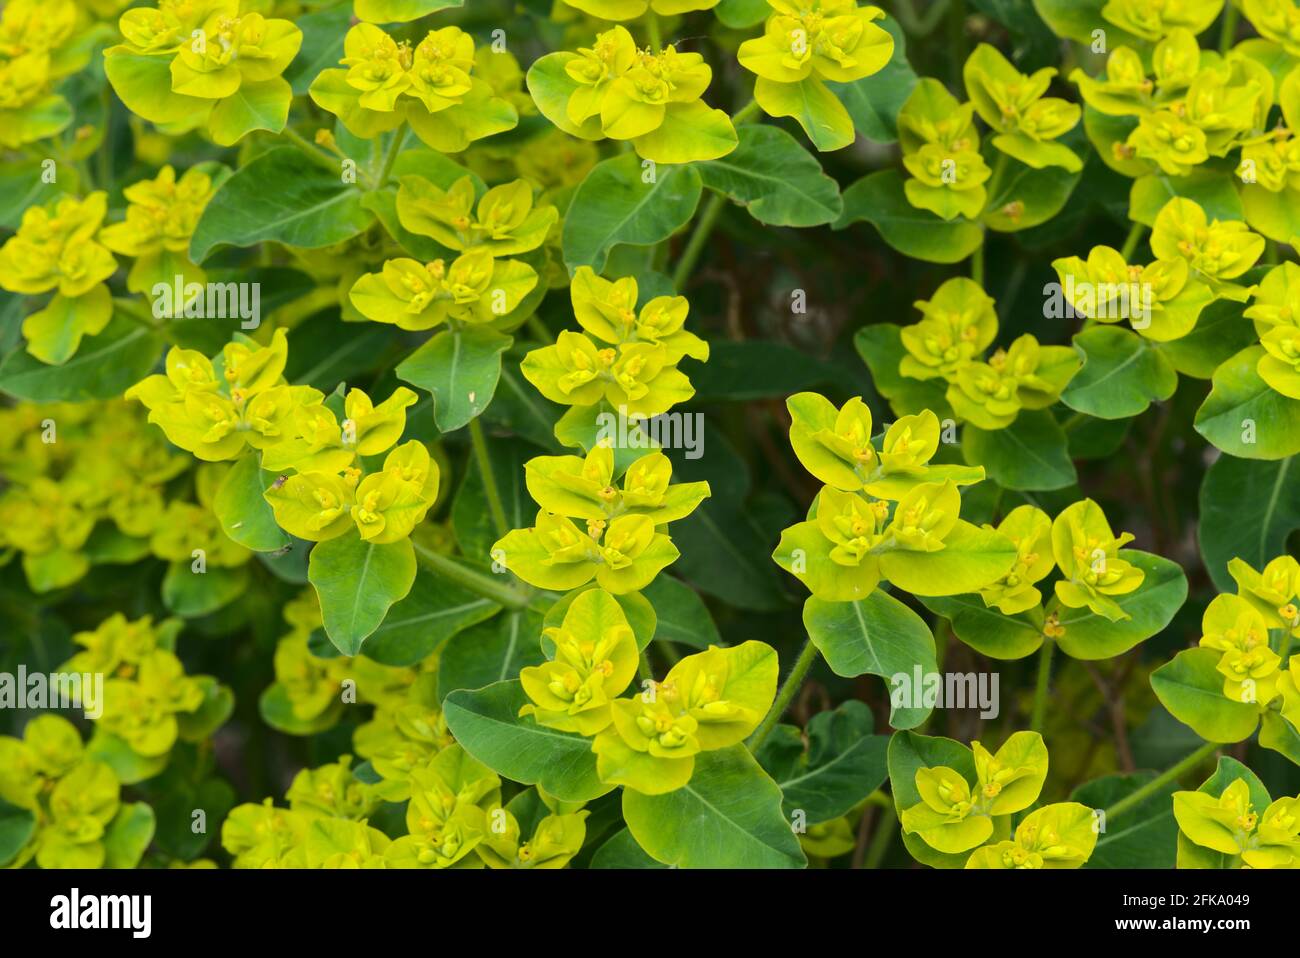 Euphorbia flower grove (Euphorbia sp.) Euphorbiaceae Stock Photo